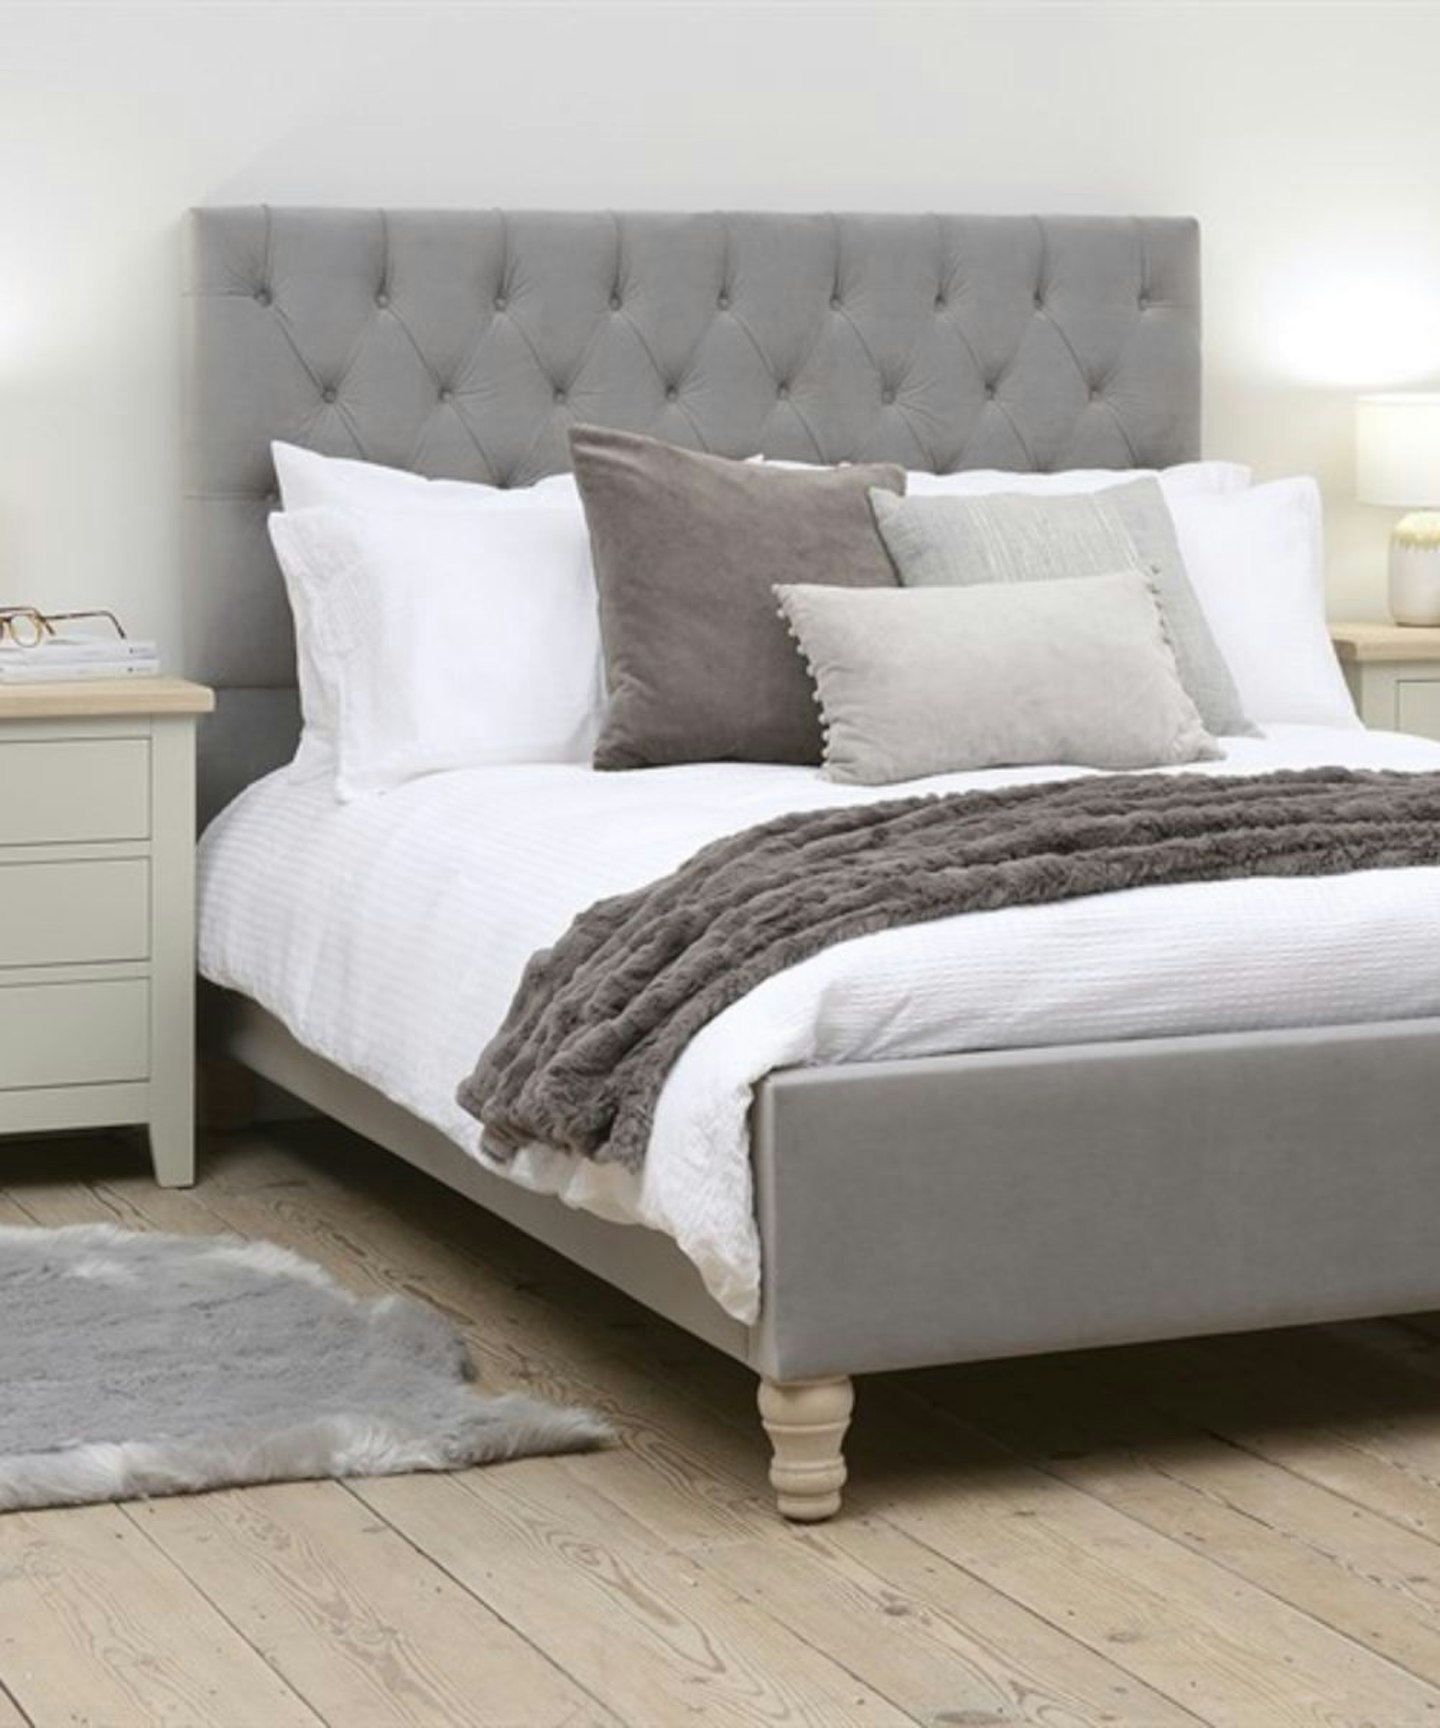 Cotswold Company Bed Evesham Granite Linen Super Kingsize Upholstered